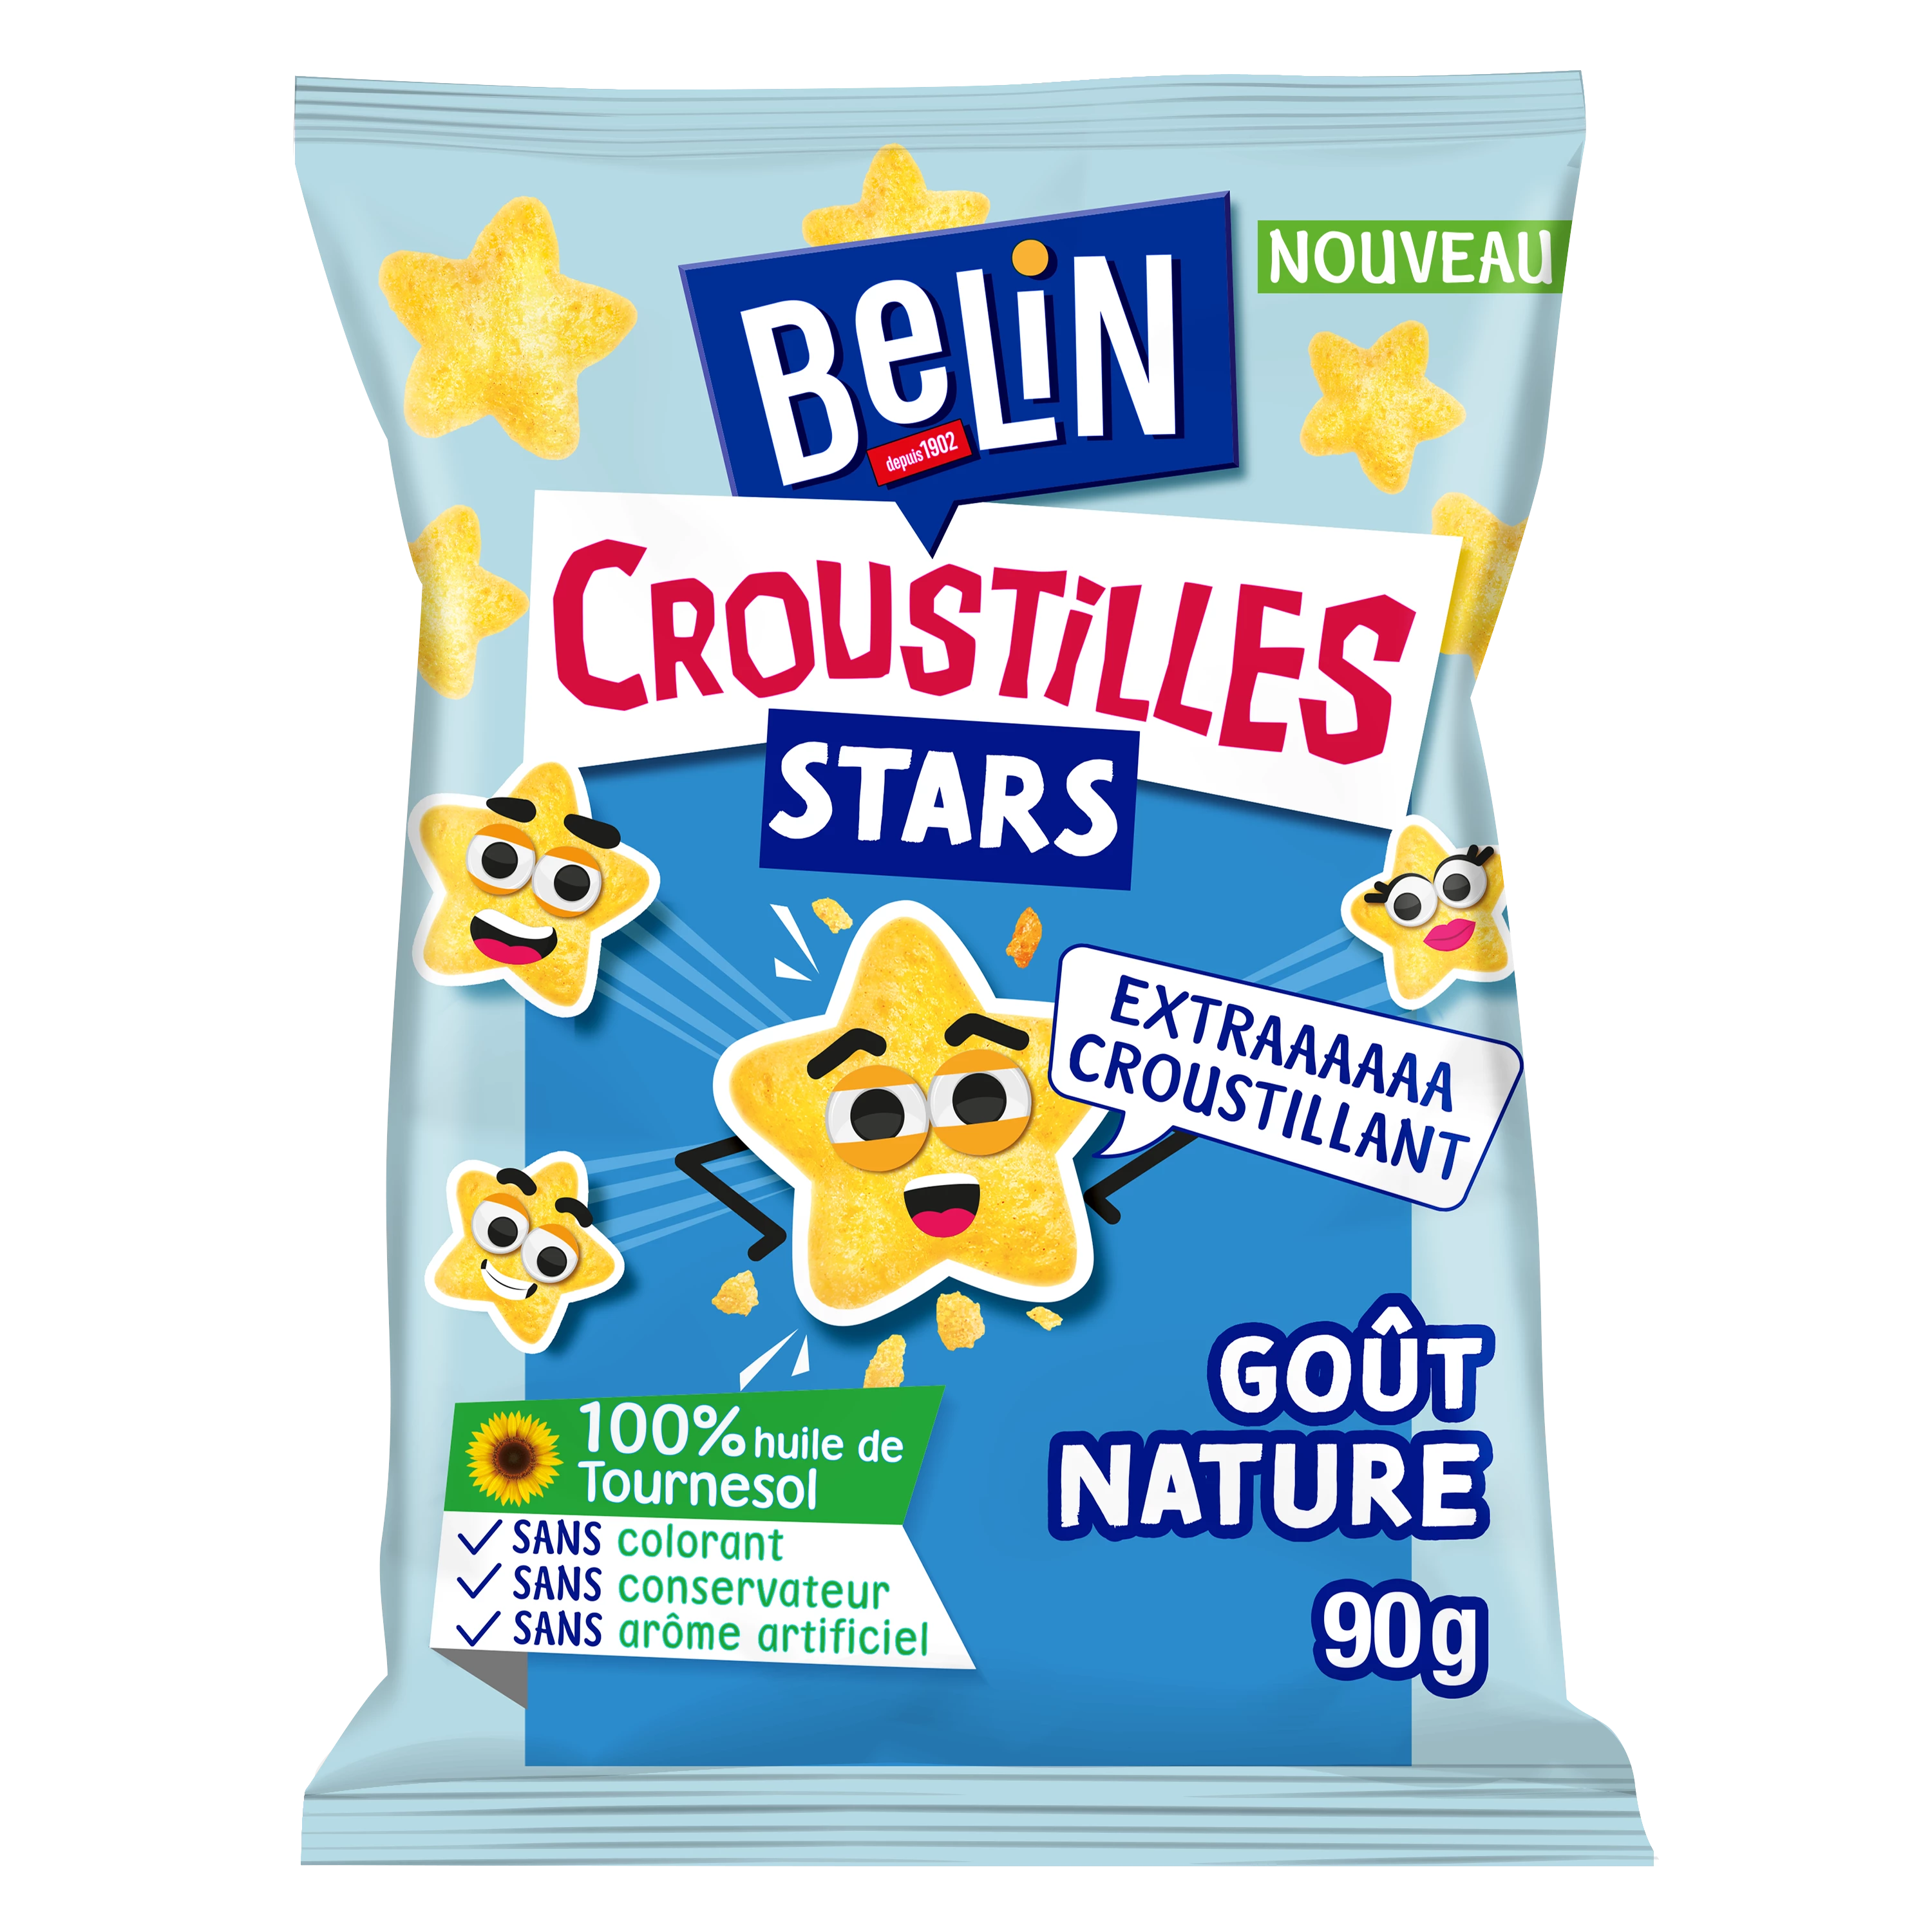 开胃饼干天然风味 Croustil les Stars, 90g - BELIN